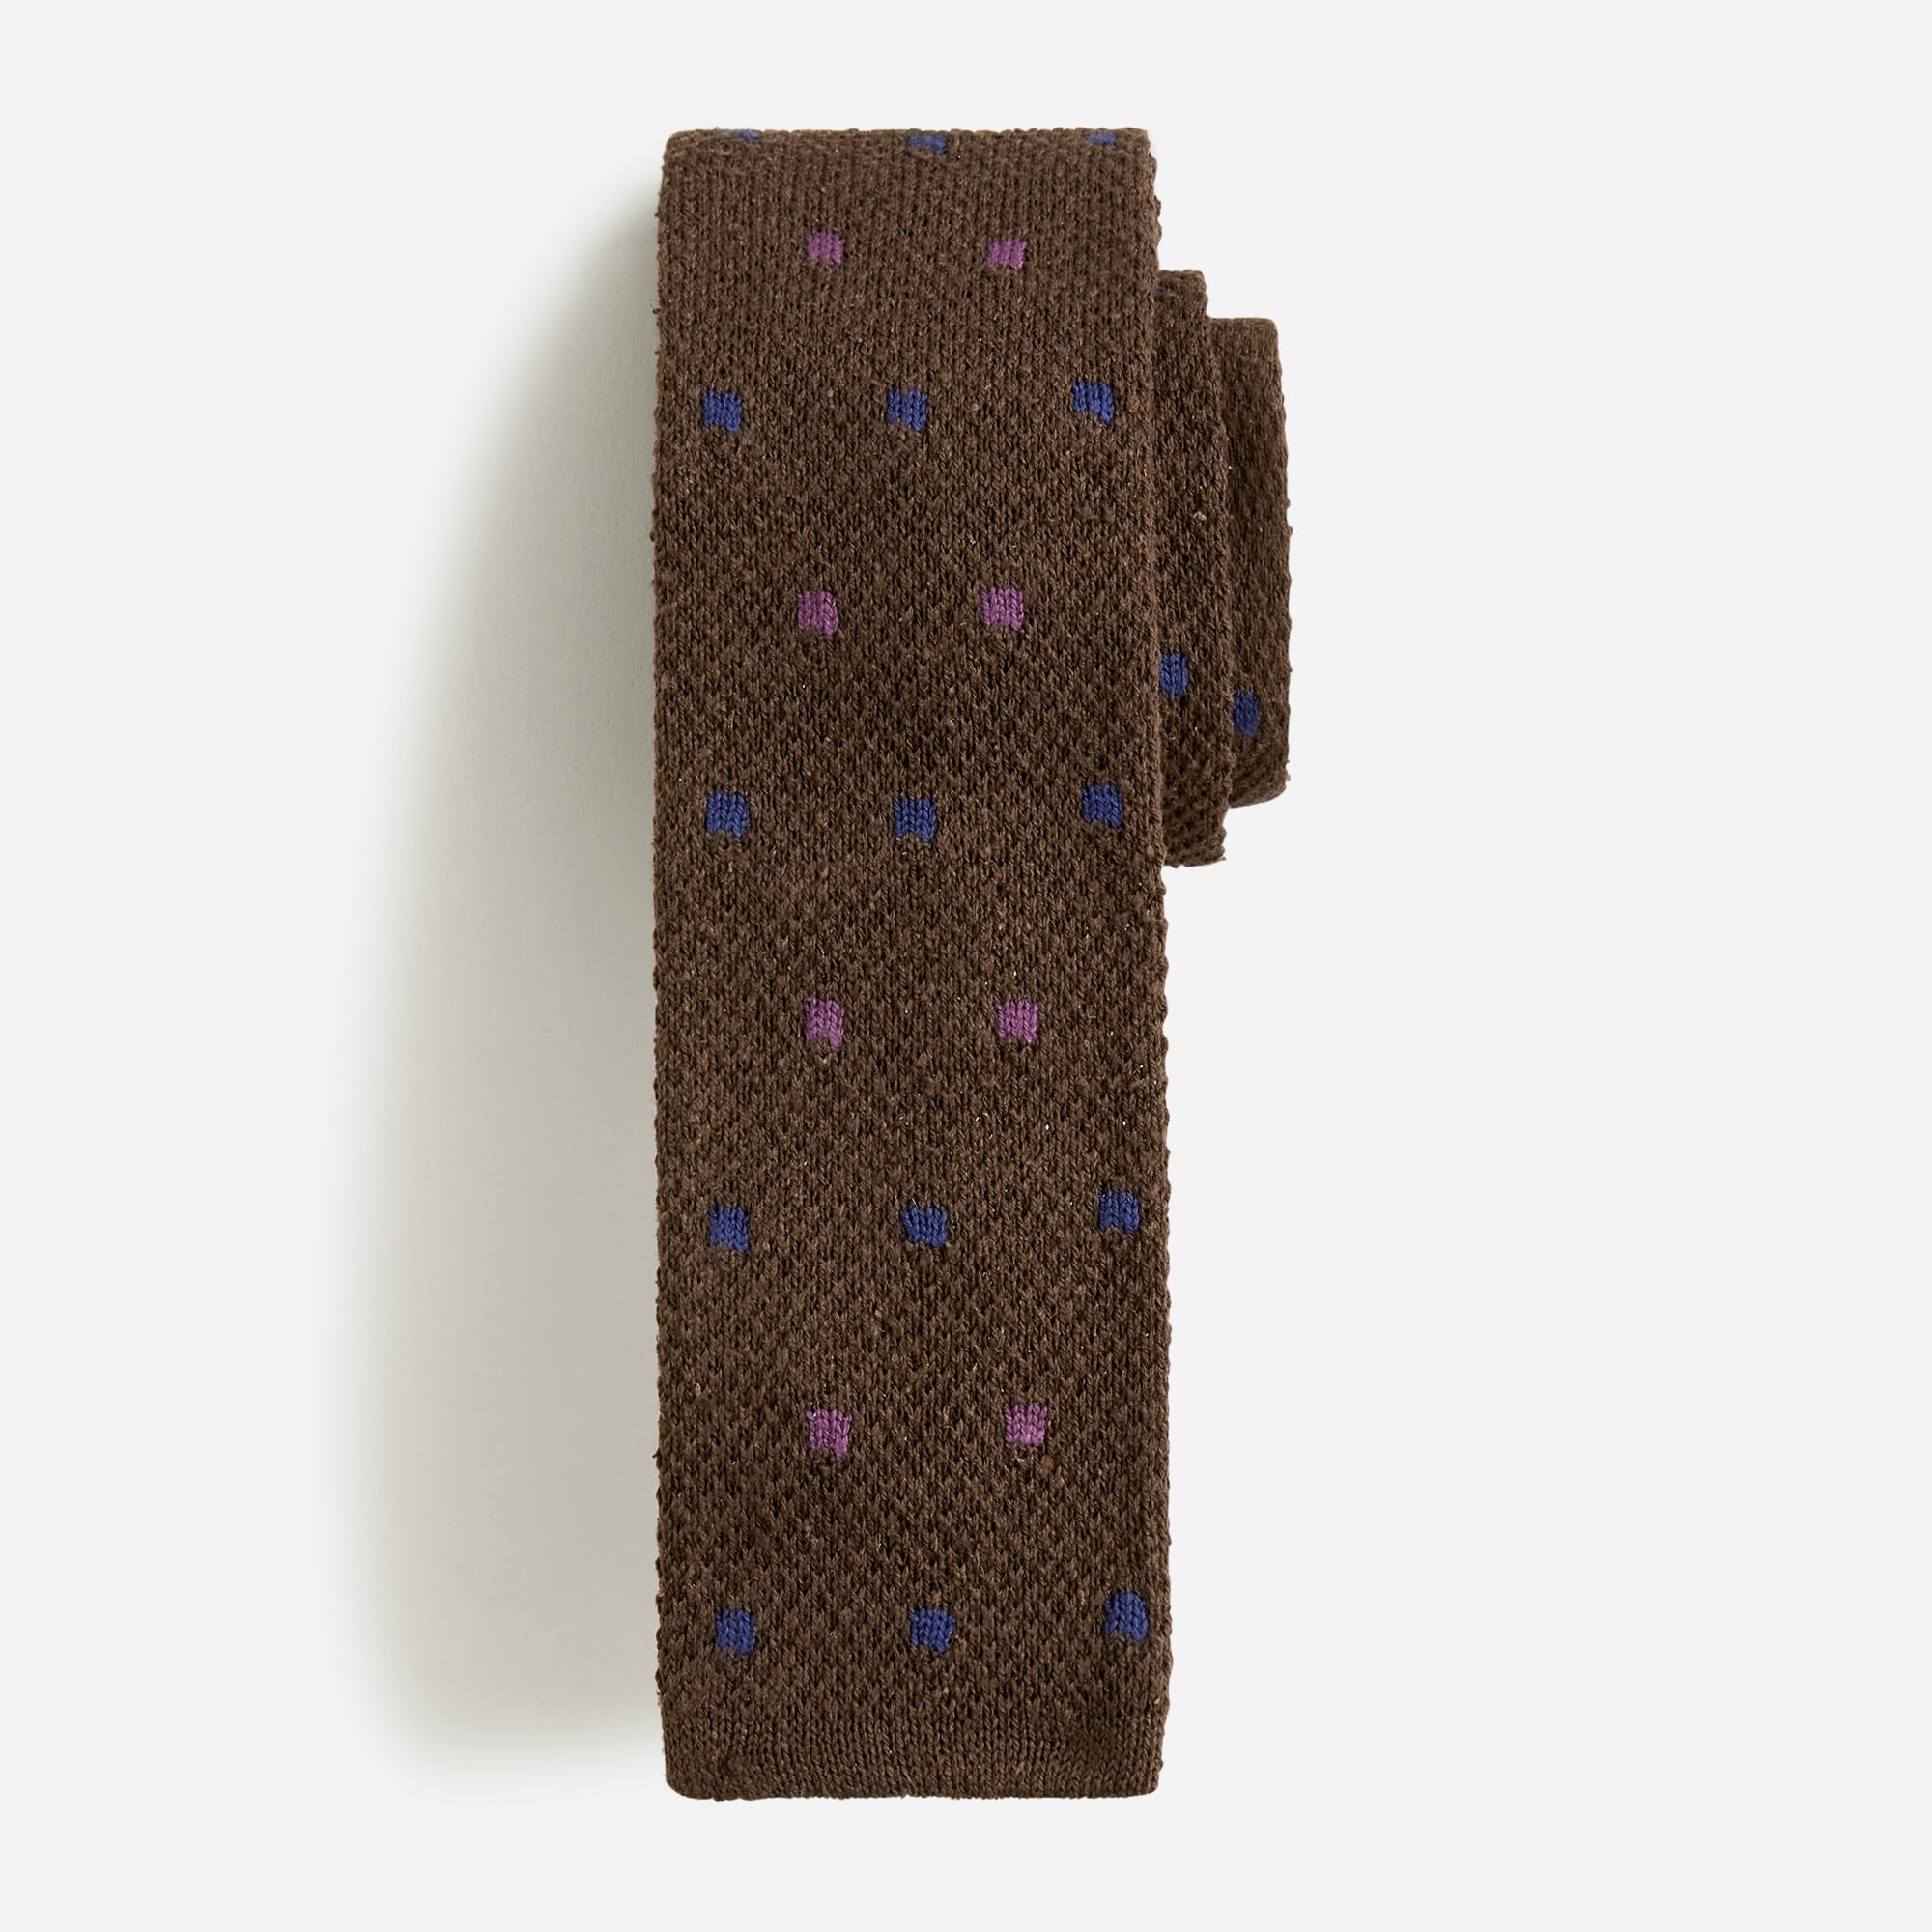  Italian silk knit tie in dot